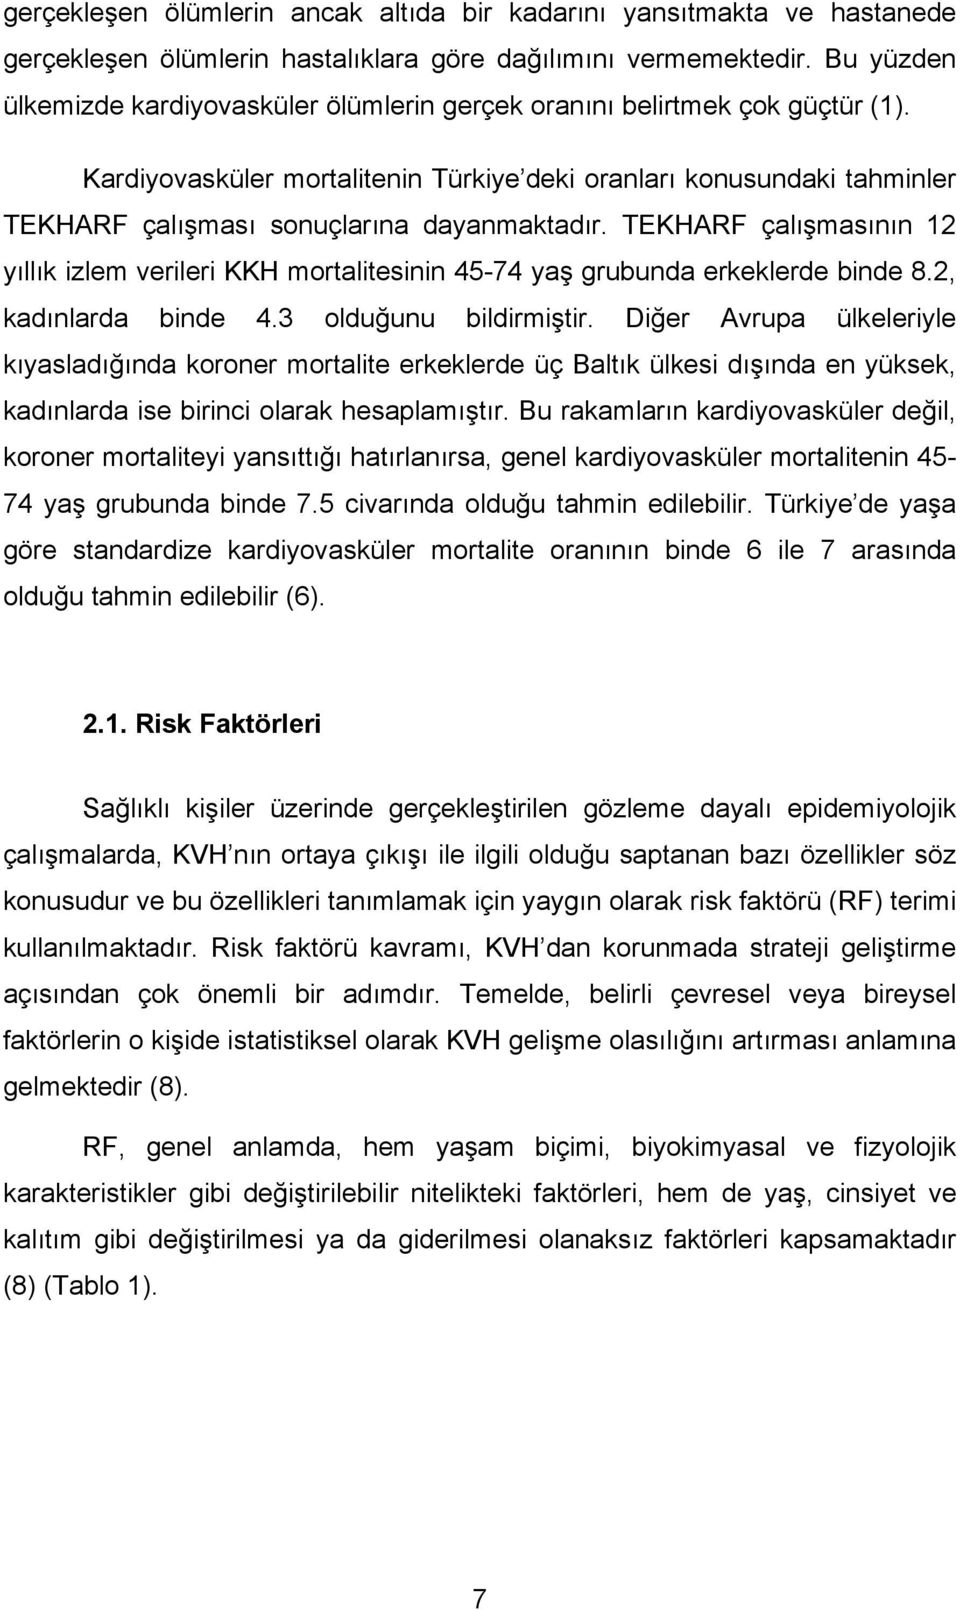 Kardiyovasküler mortalitenin Türkiye deki oranları konusundaki tahminler TEKHARF çalışması sonuçlarına dayanmaktadır.